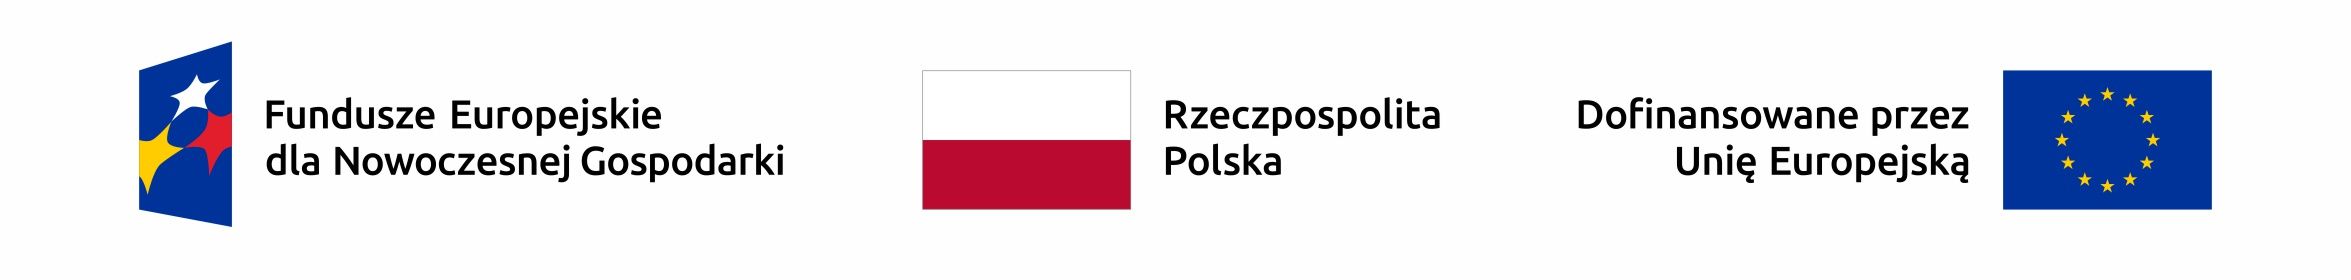 logotypy programu dofinansowania Funduszy Europejskich, Polski i Unii Europejskiej